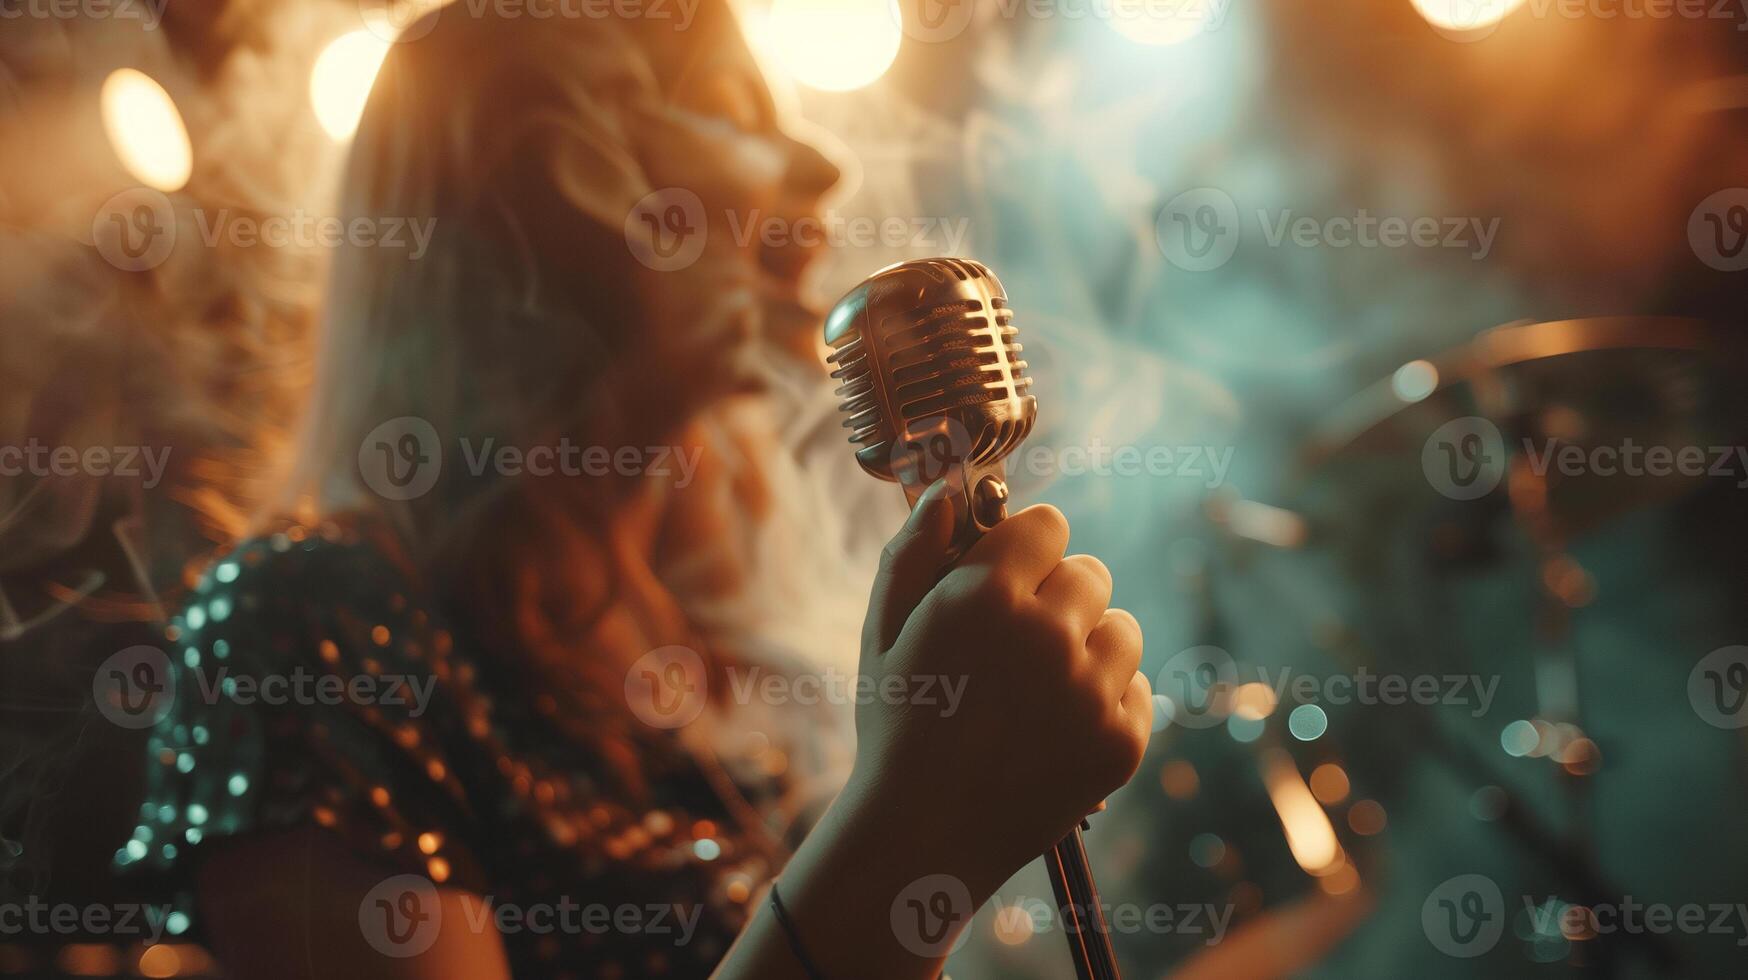 vrouw het zingen in een club of concert stadium met Holding een retro microfoon foto